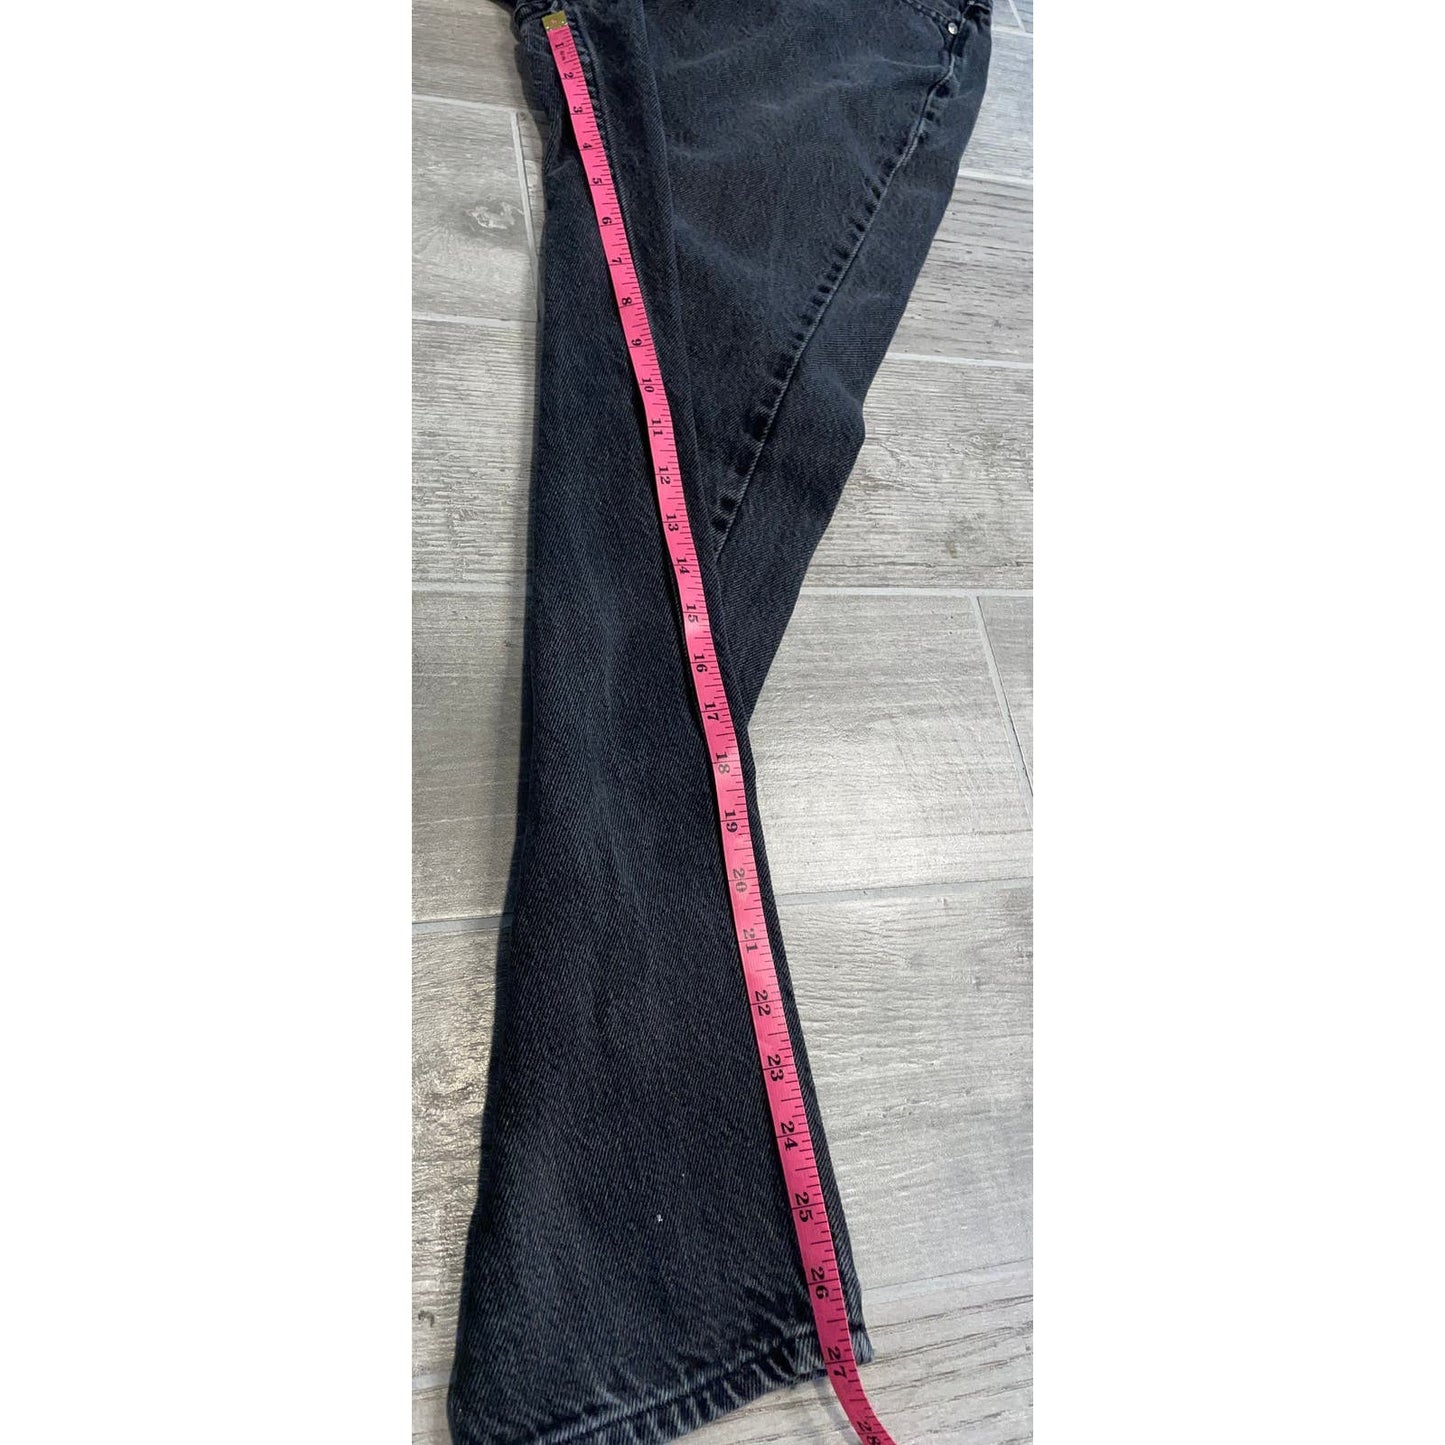 Vintage Black Anchor Blue Denim Jeans